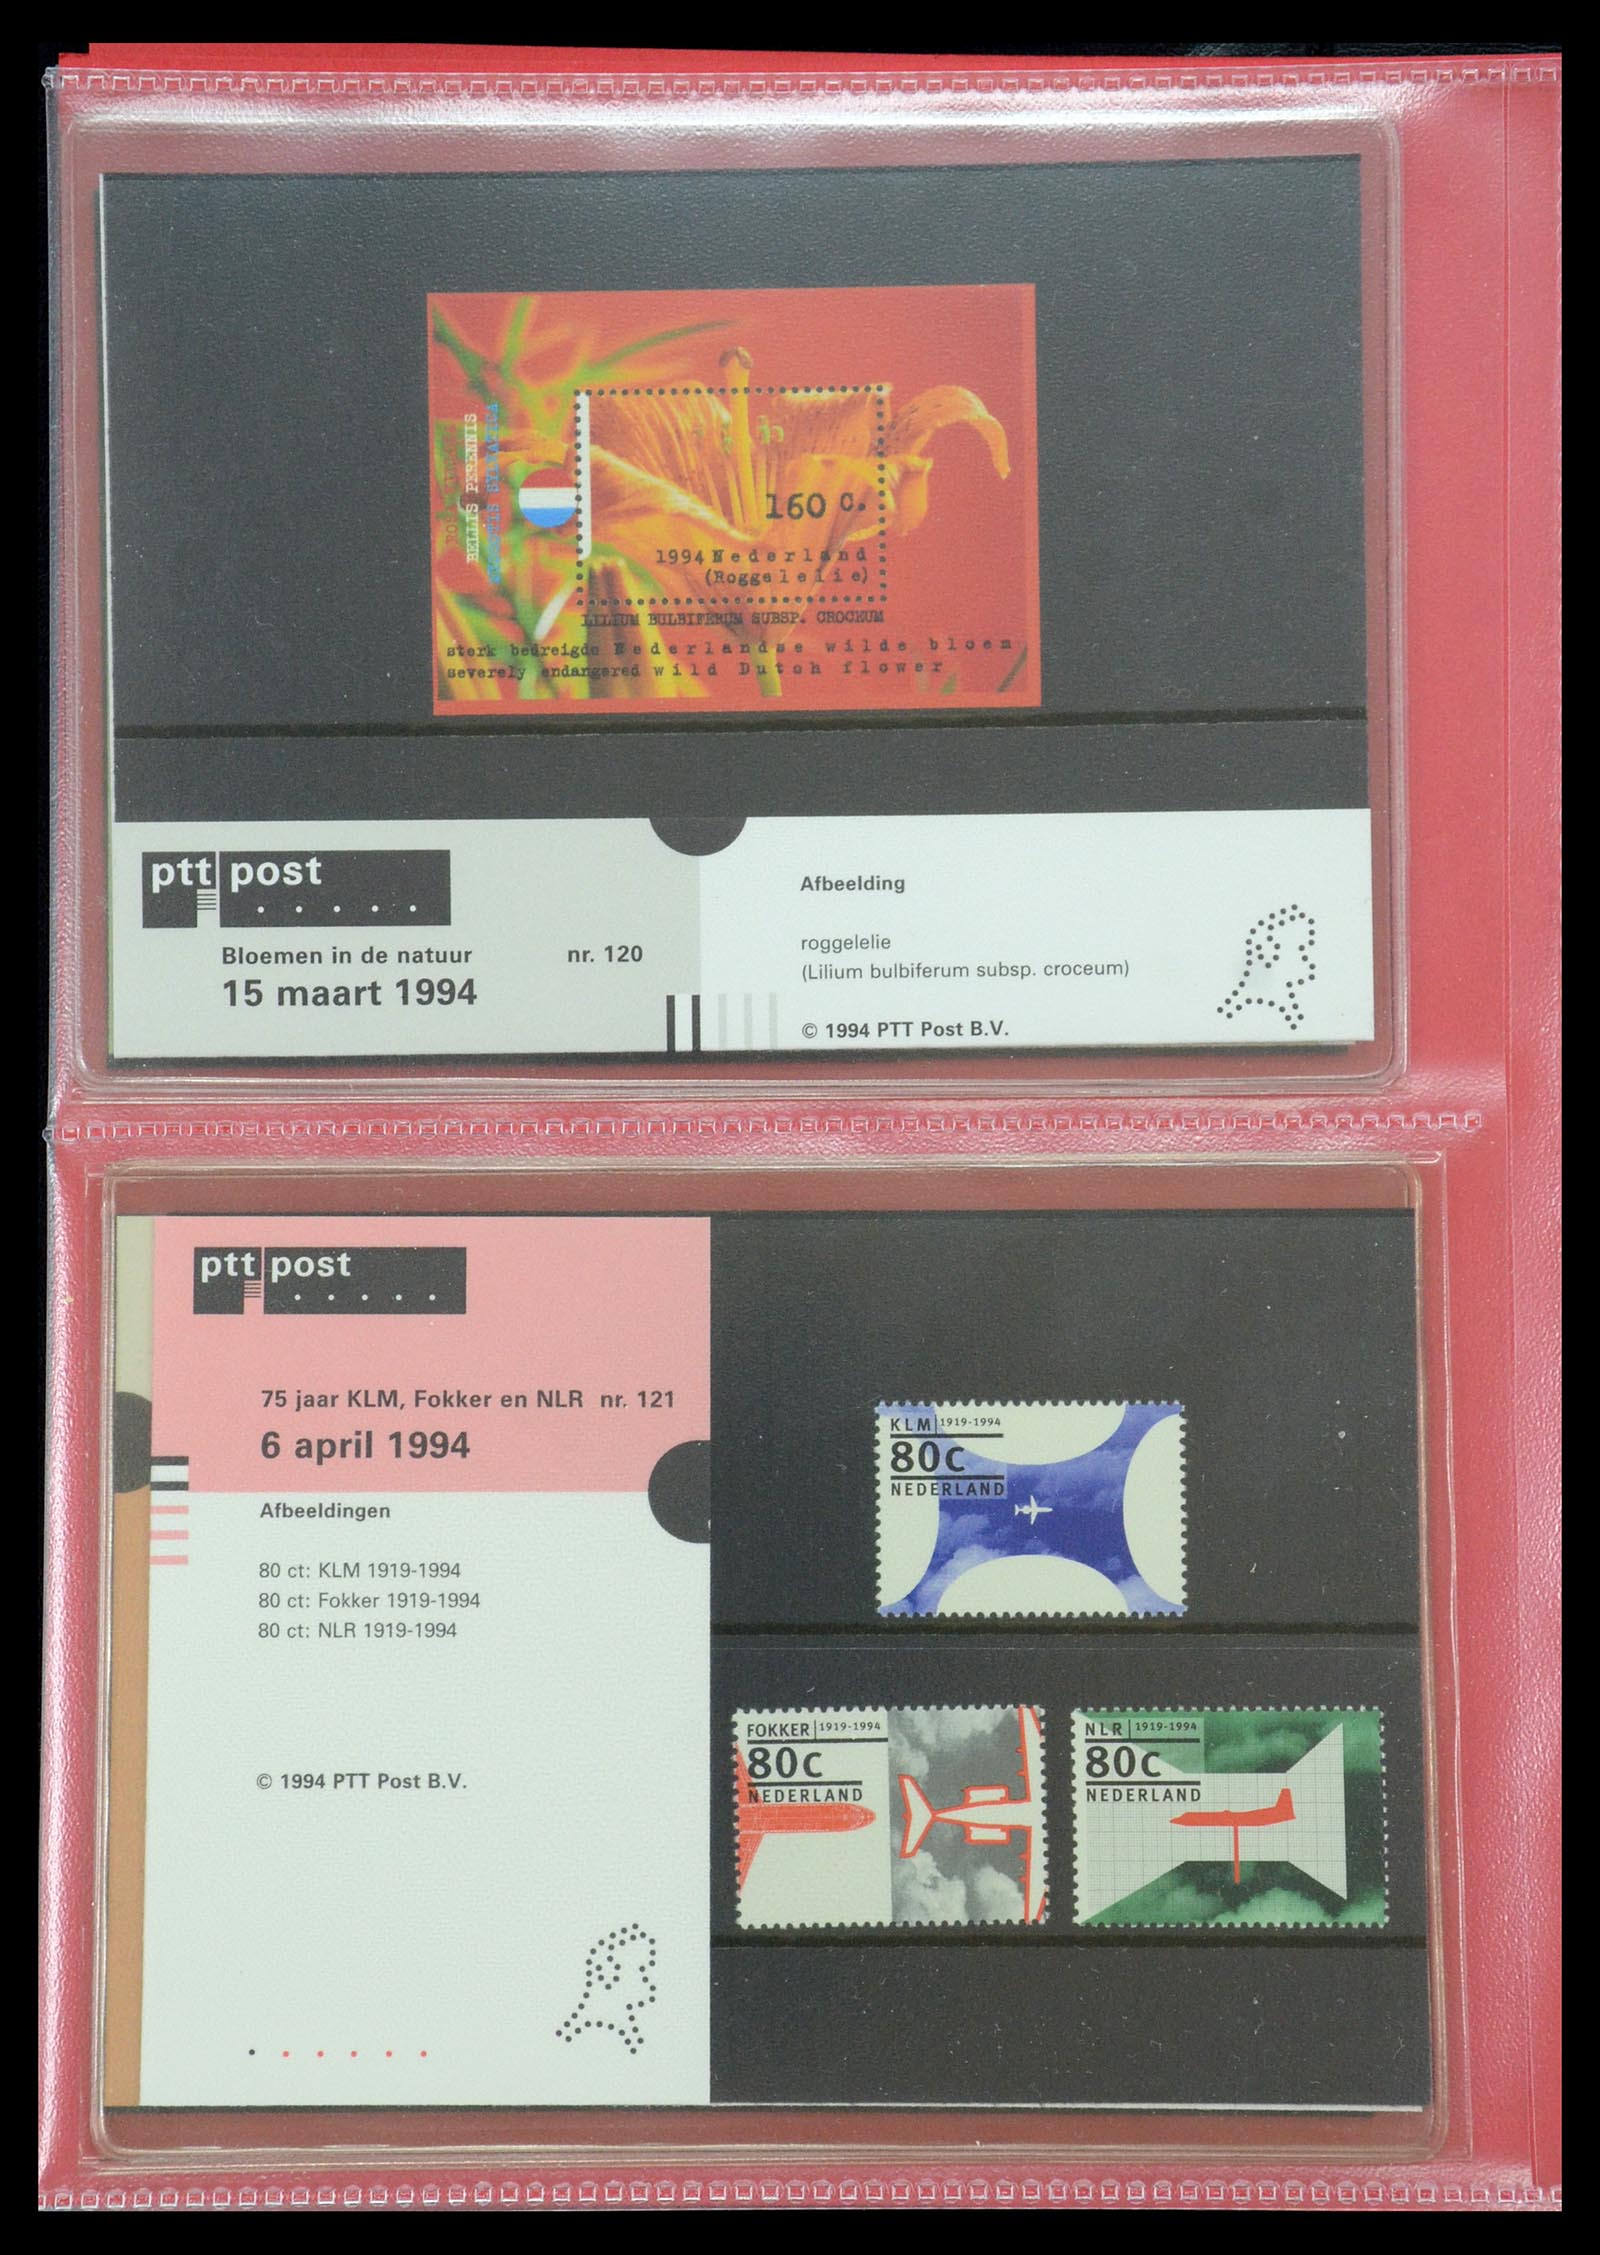 35692 062 - Stamp Collection 35692 Netherlands presentation packs 1982-2021!!